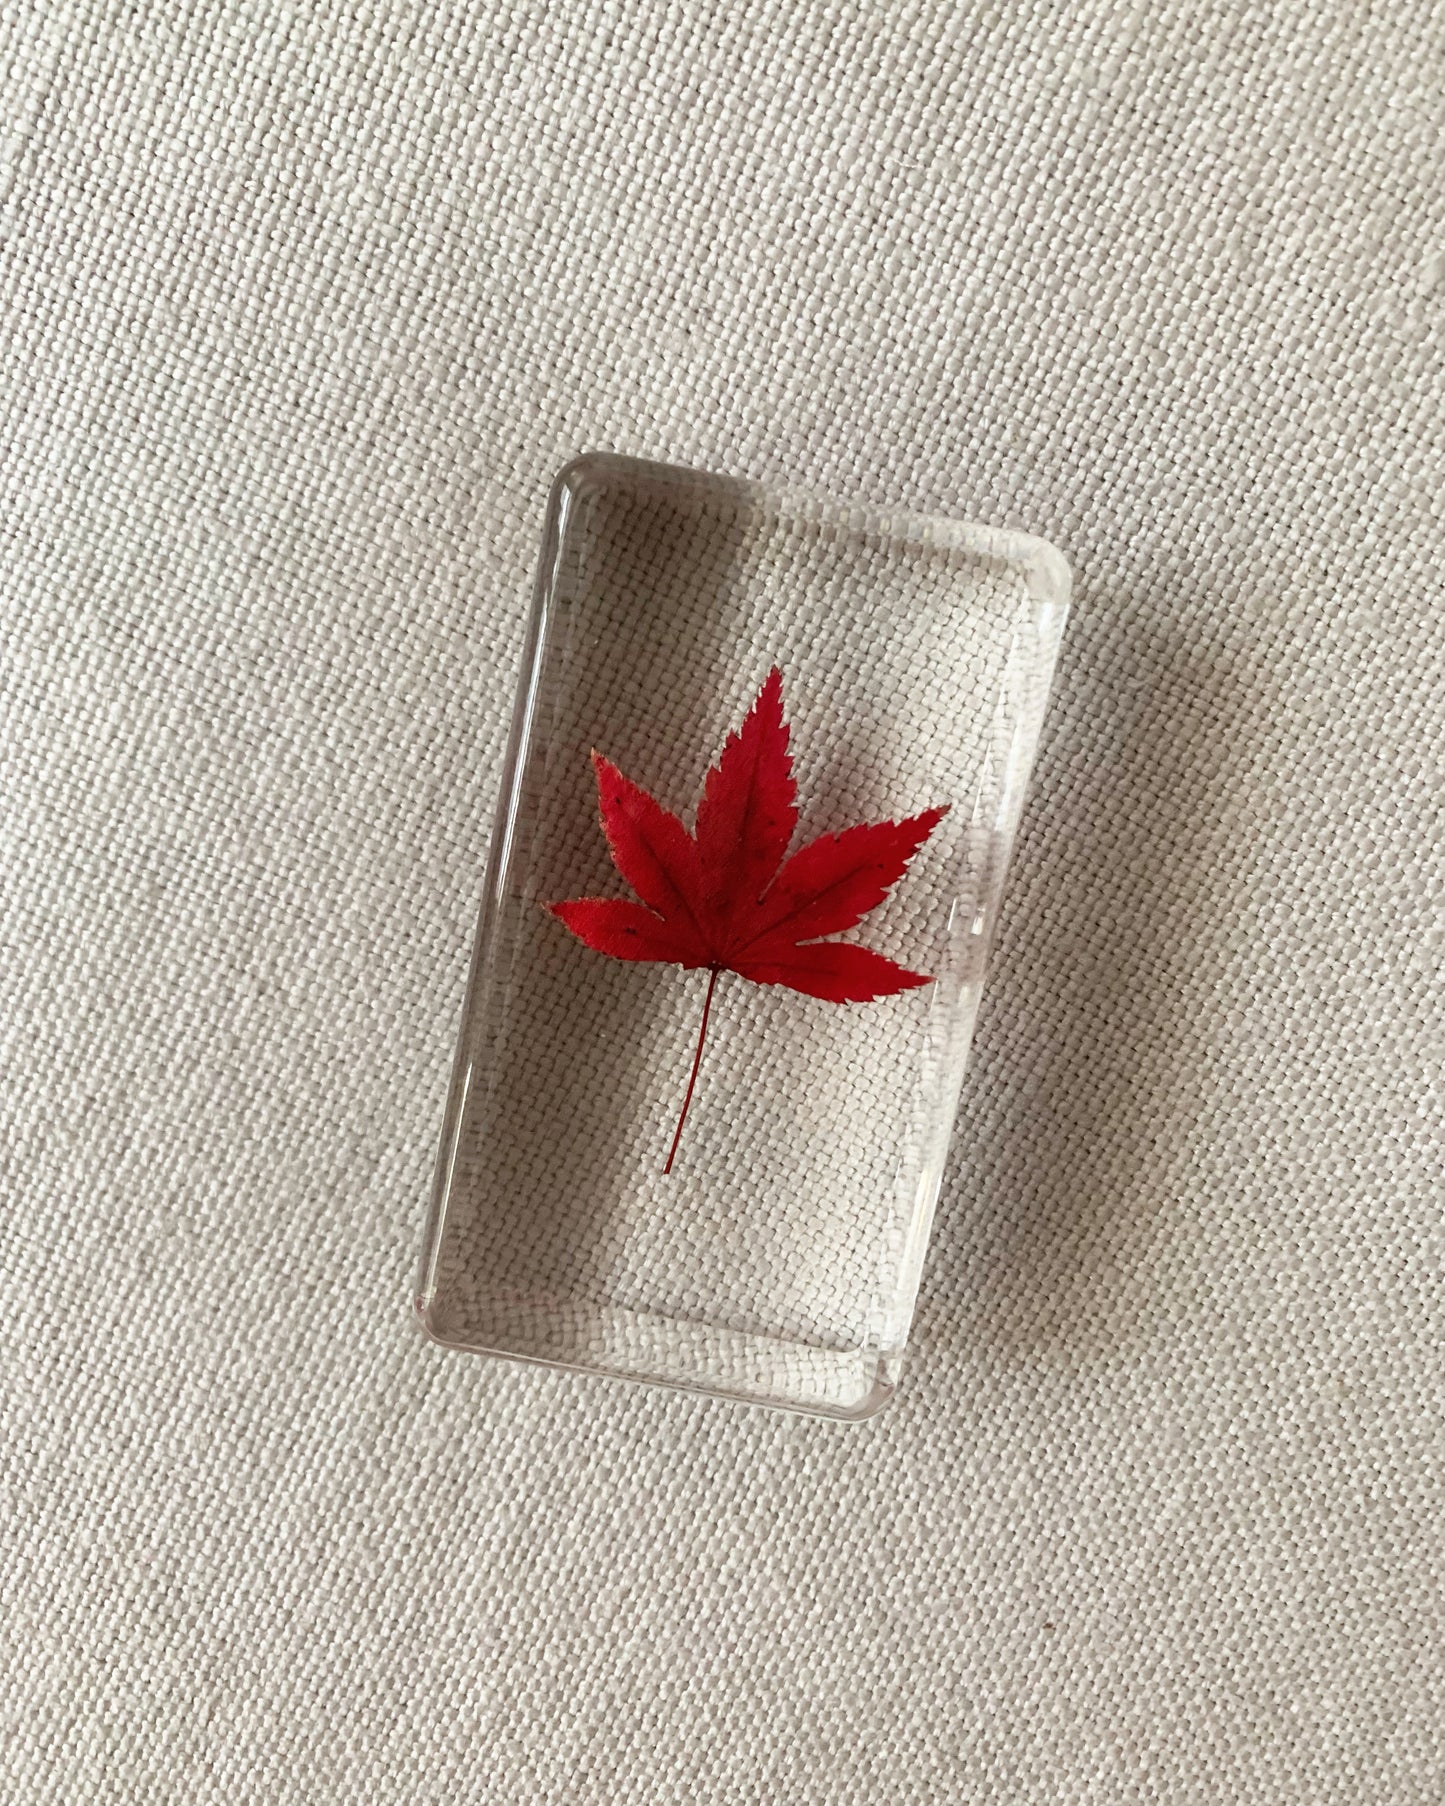 Maple Leaf Crystal